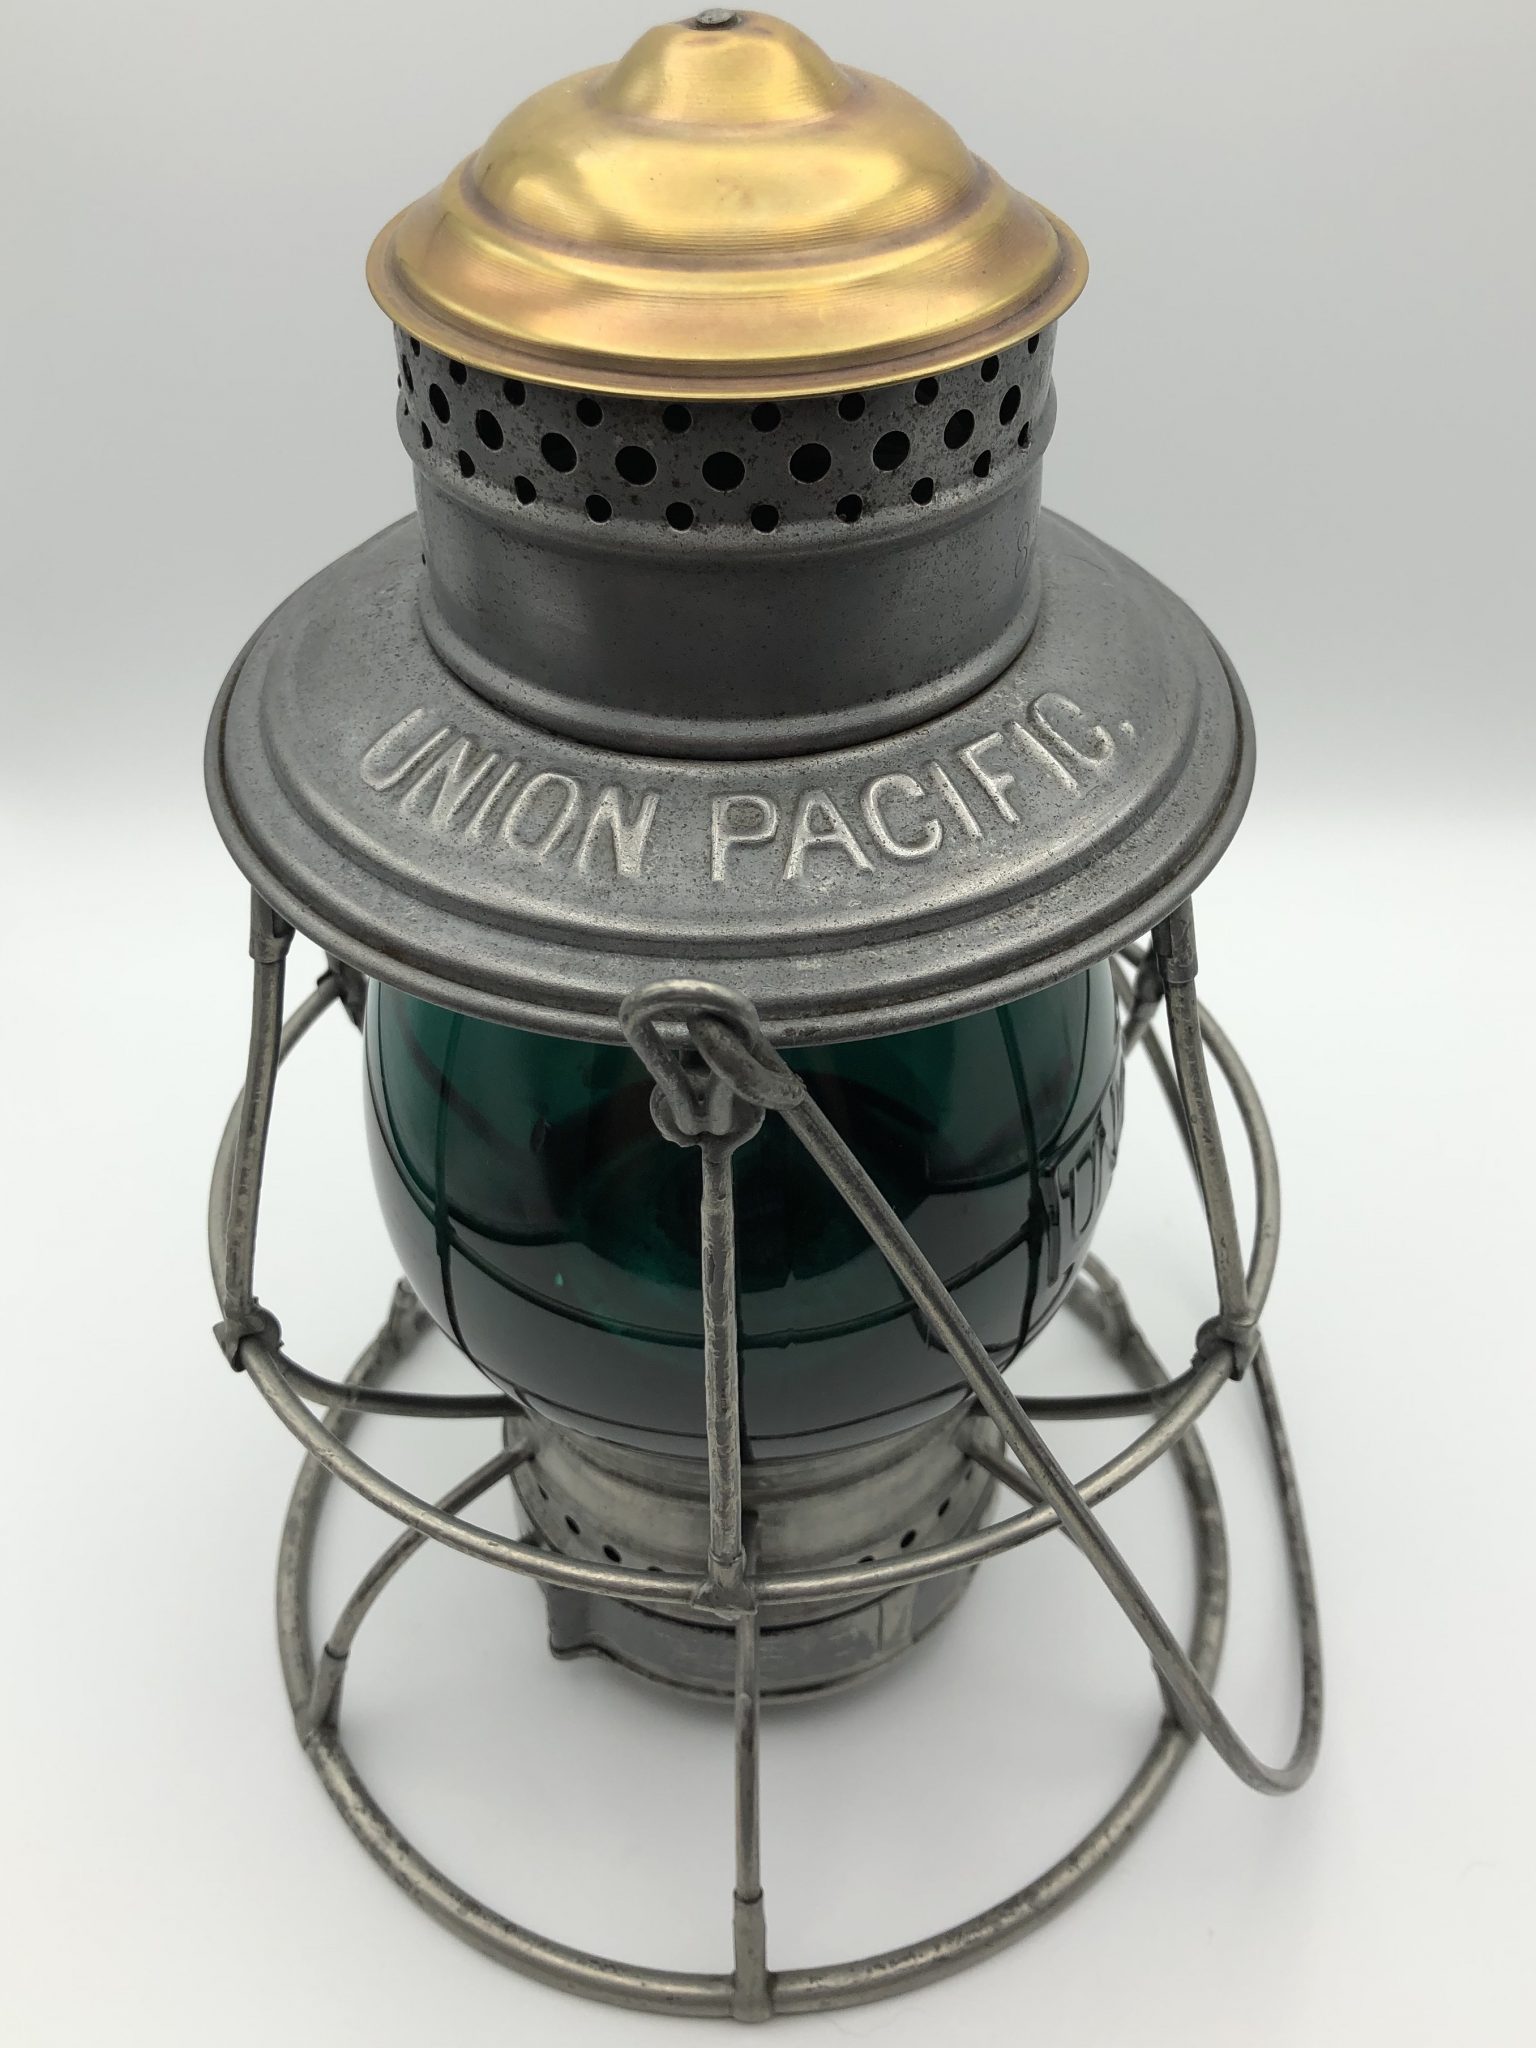 Union Pacific Brasstop Railroad Lantern